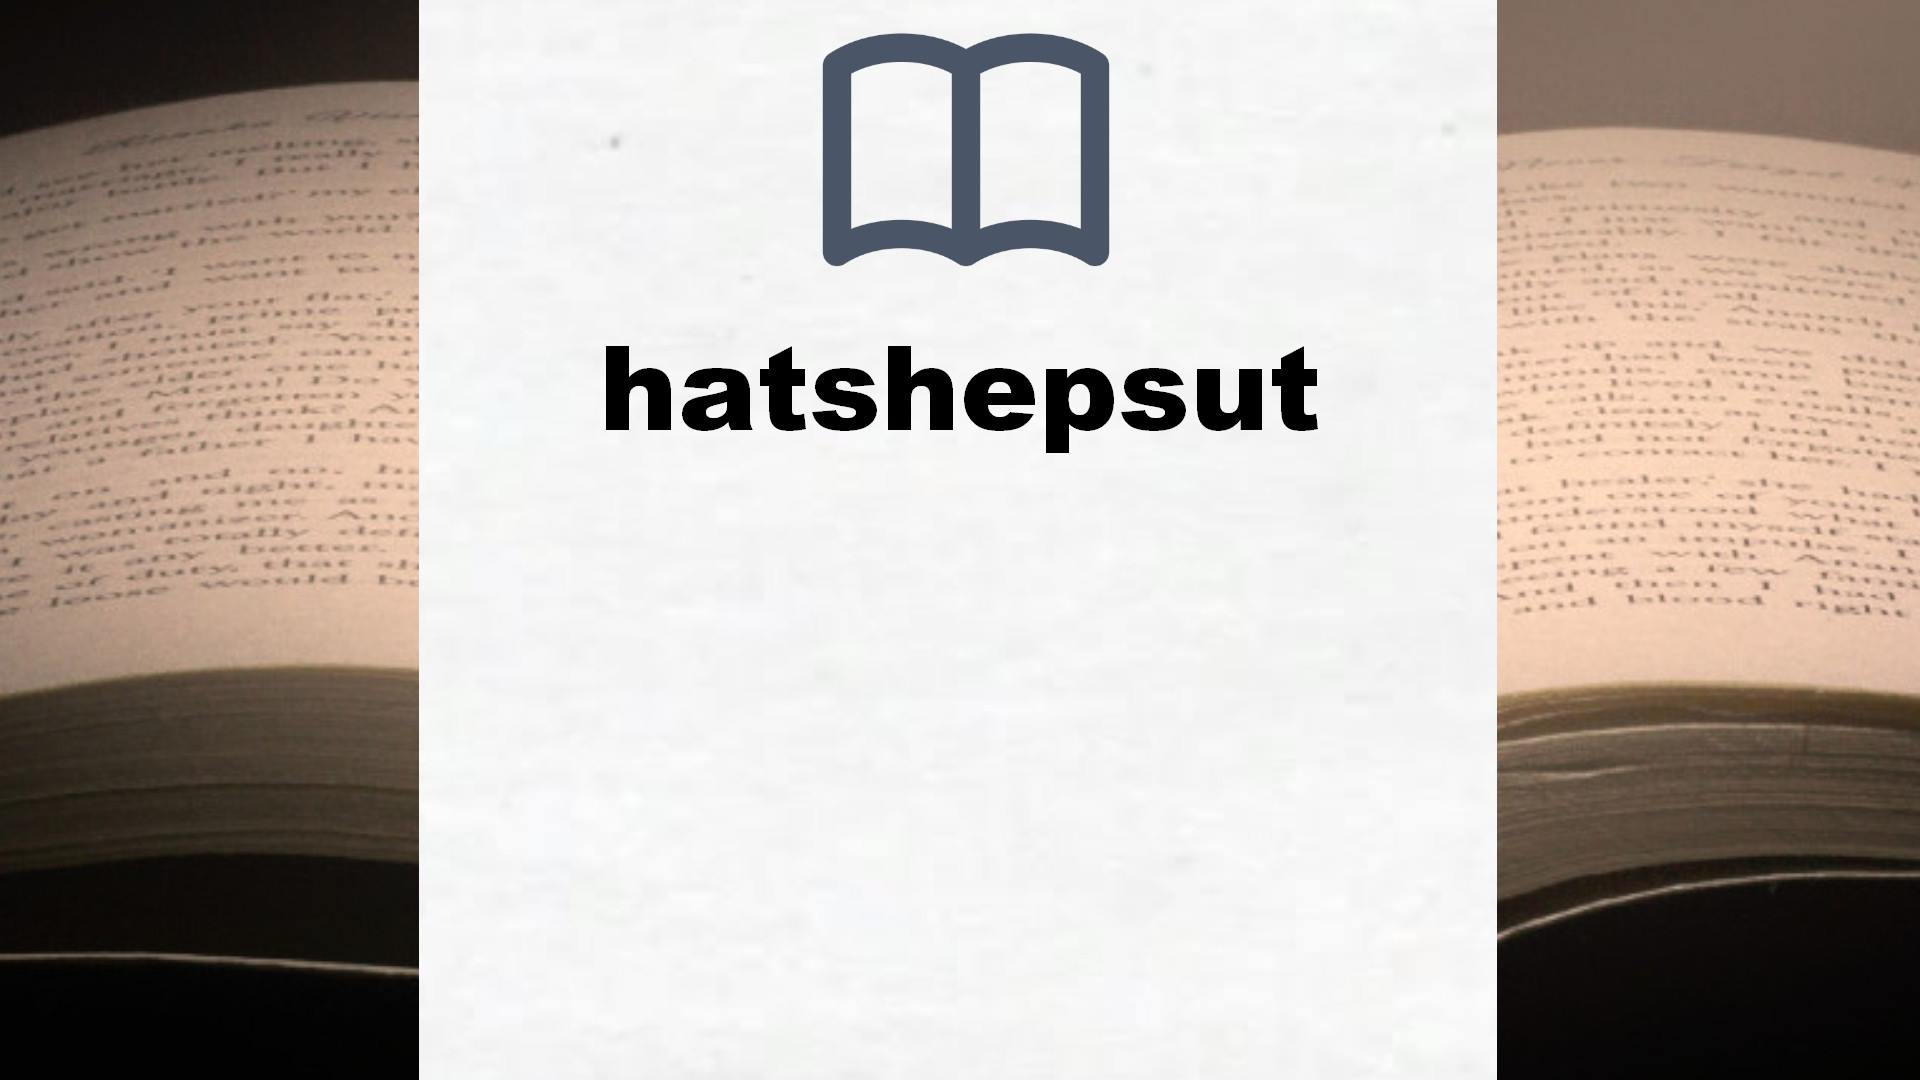 Libros sobre hatshepsut